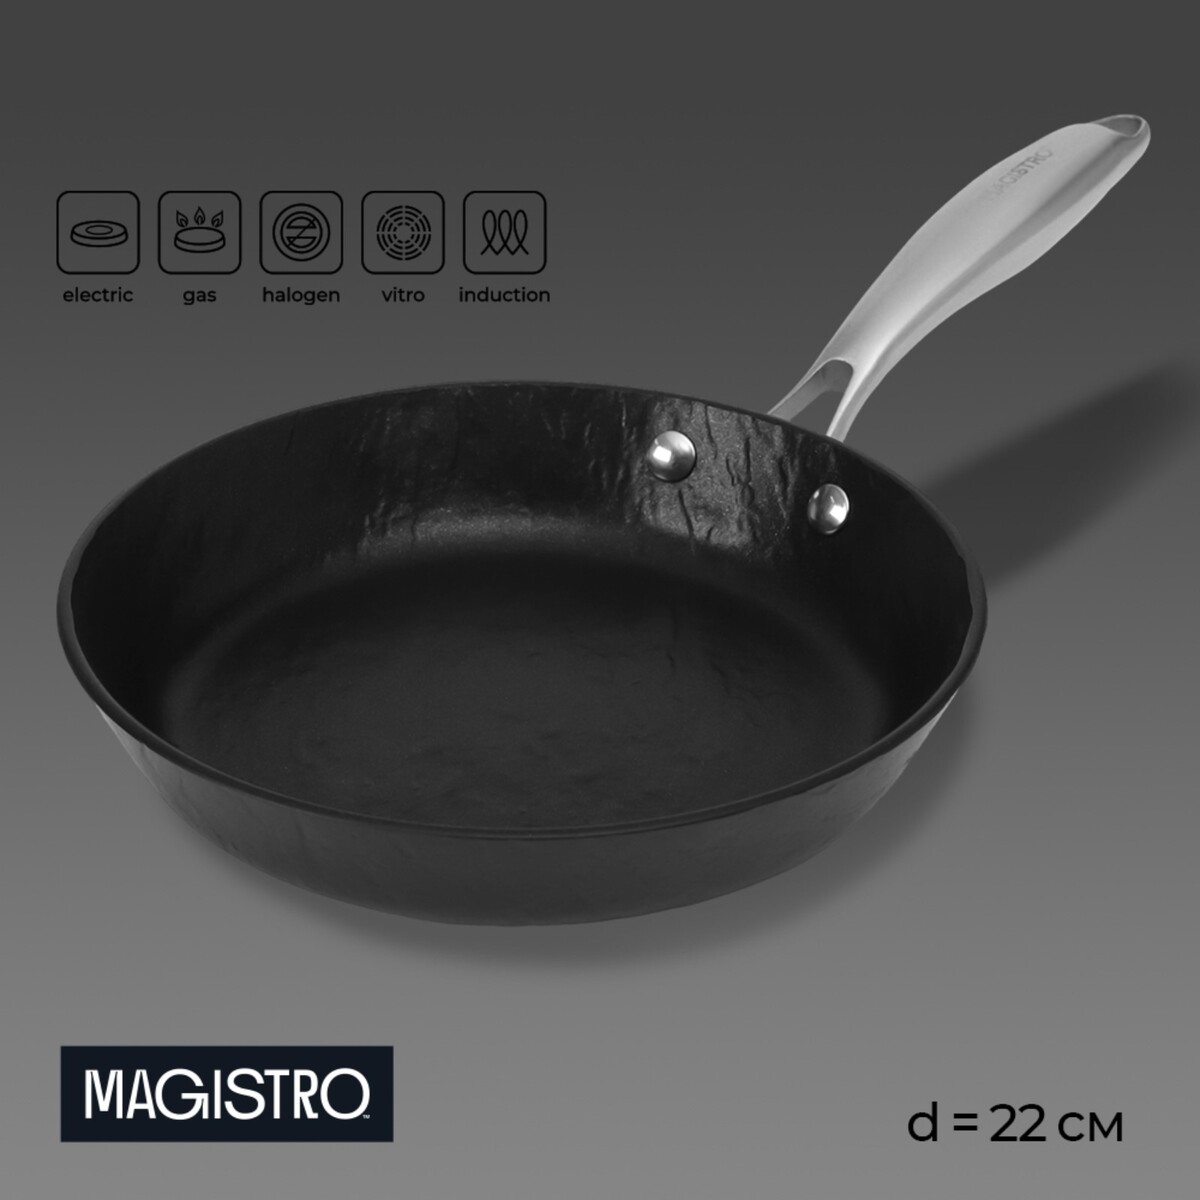 Сковорода magistro rock stone, d=22 см, h=4,3 см, антипригарное покрытие, индукция, цвет черный сковорода нержавеющая сталь 26 см антипригарное покрытие катунь общепит кт об са 26 индукция